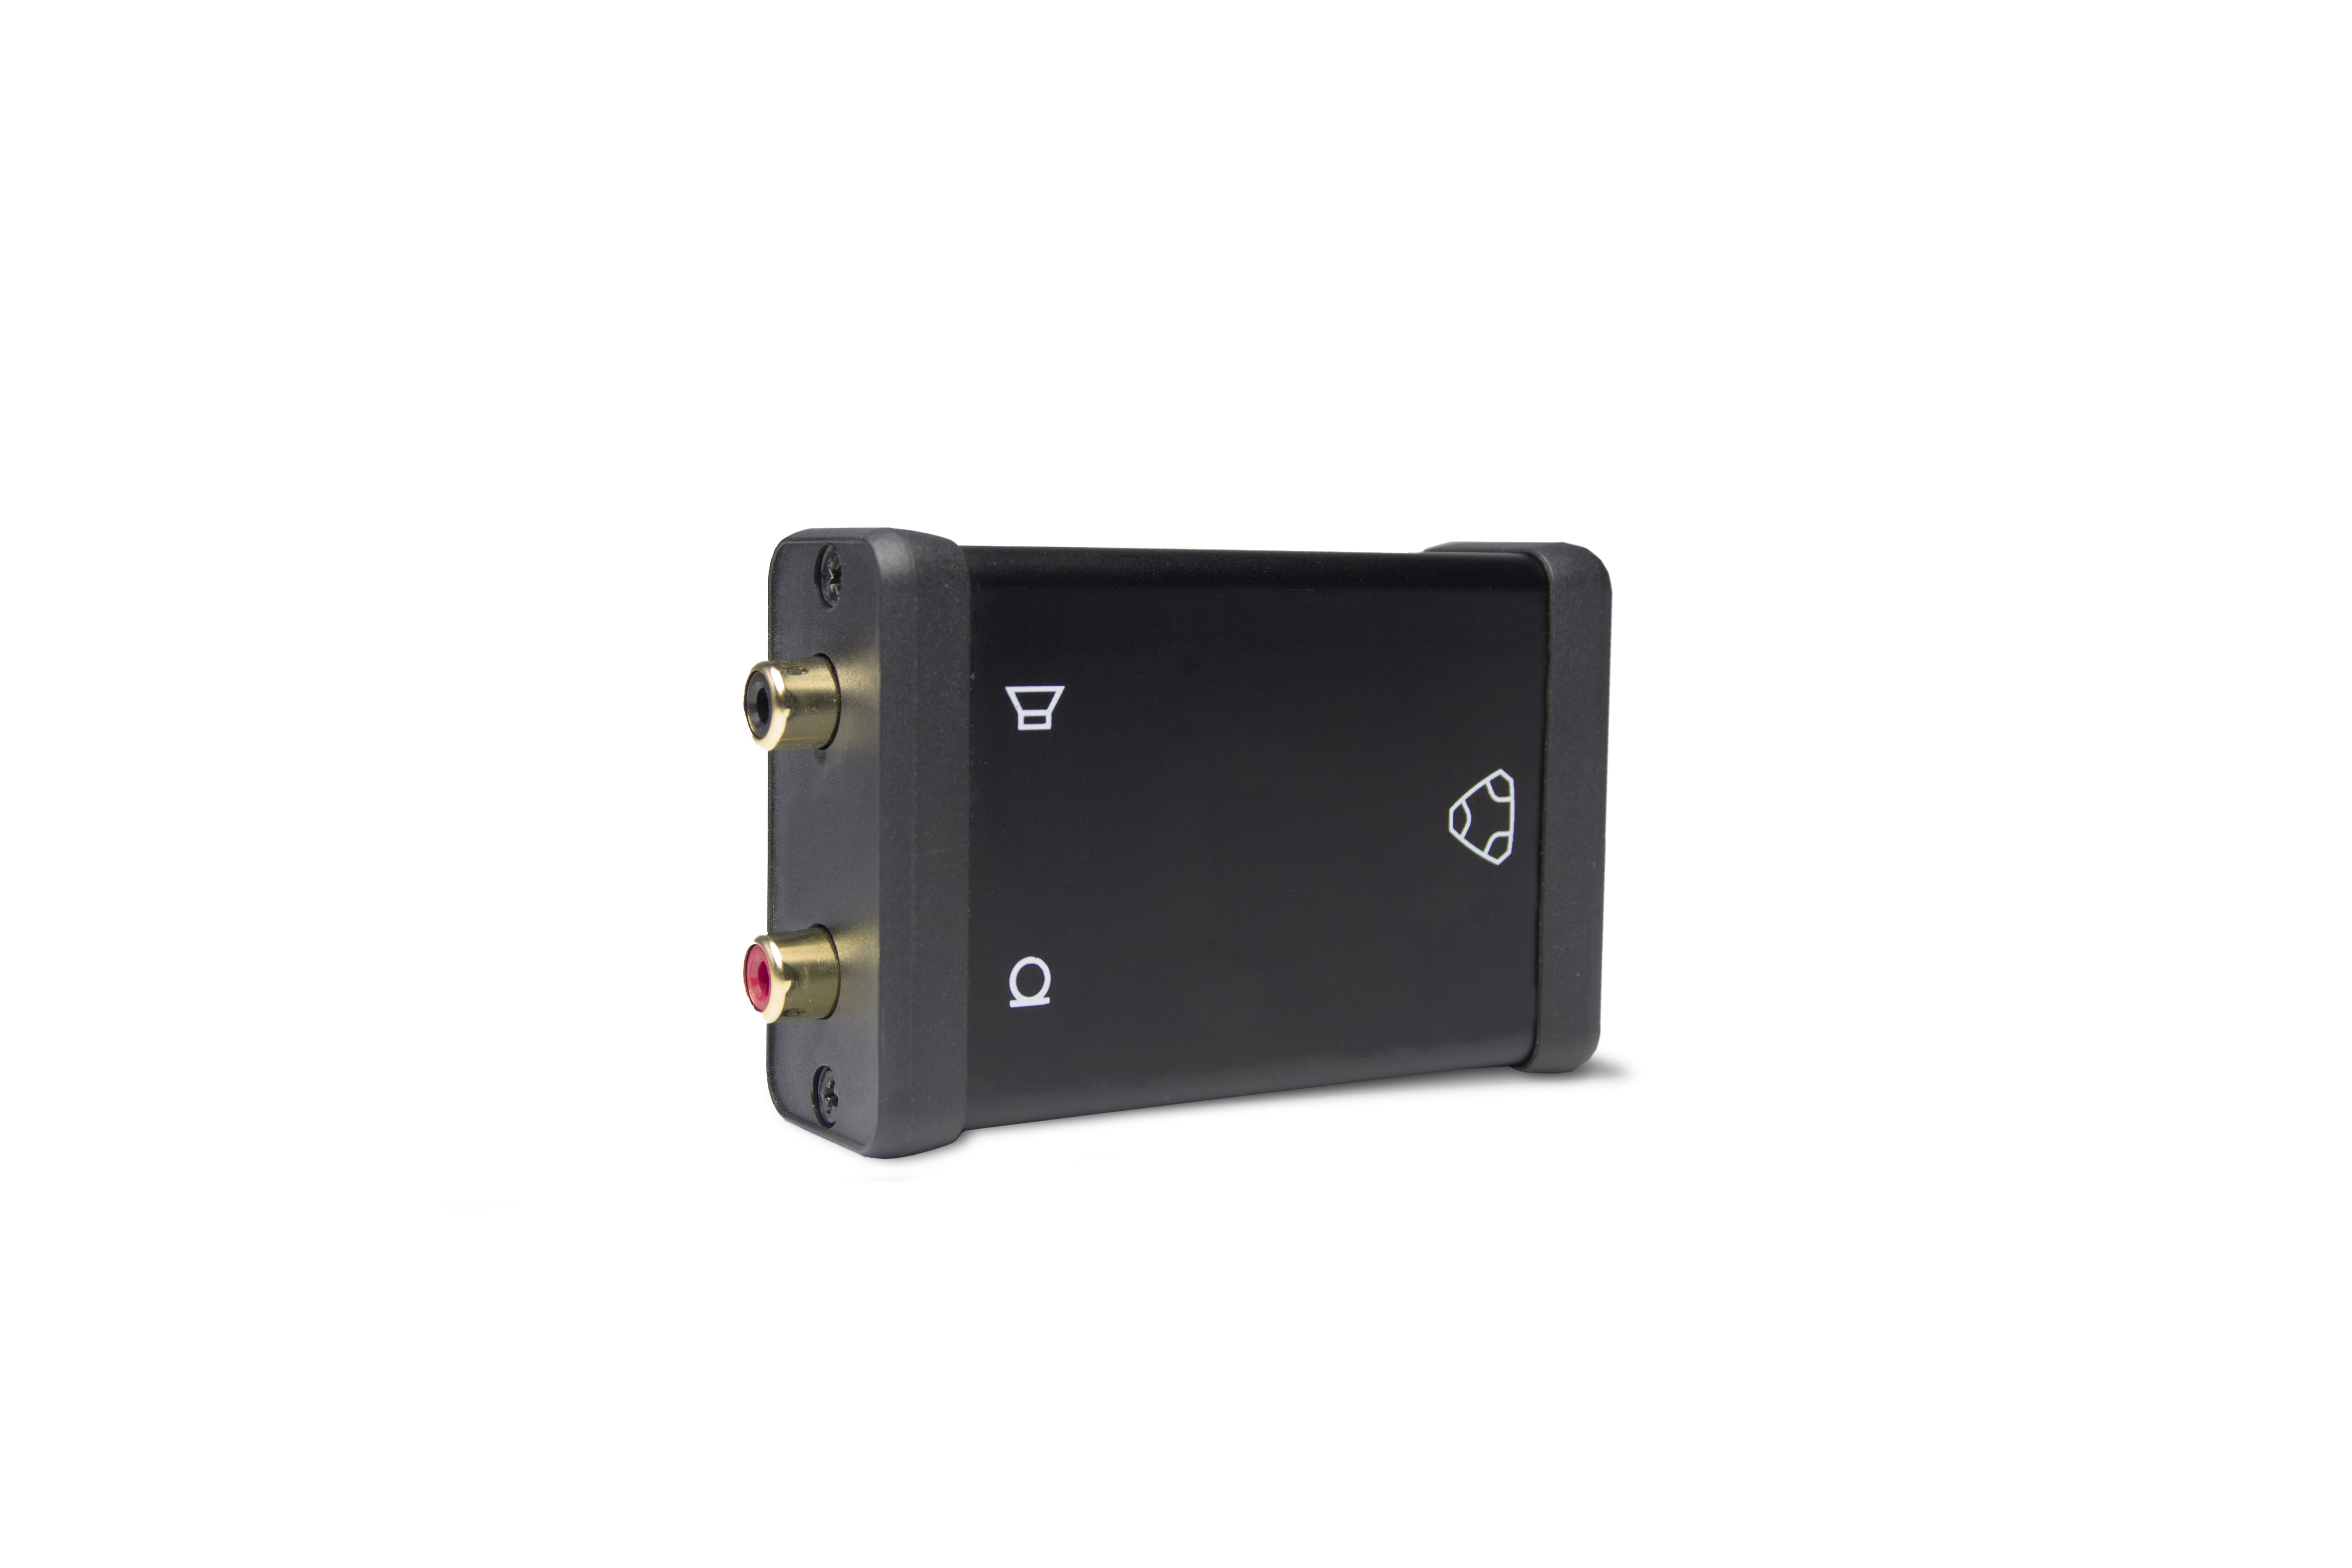 Konftel PA interface box - Audio-Schnittstellenadapter für Konferenztelefon, Mikrofon, Lautsprecher